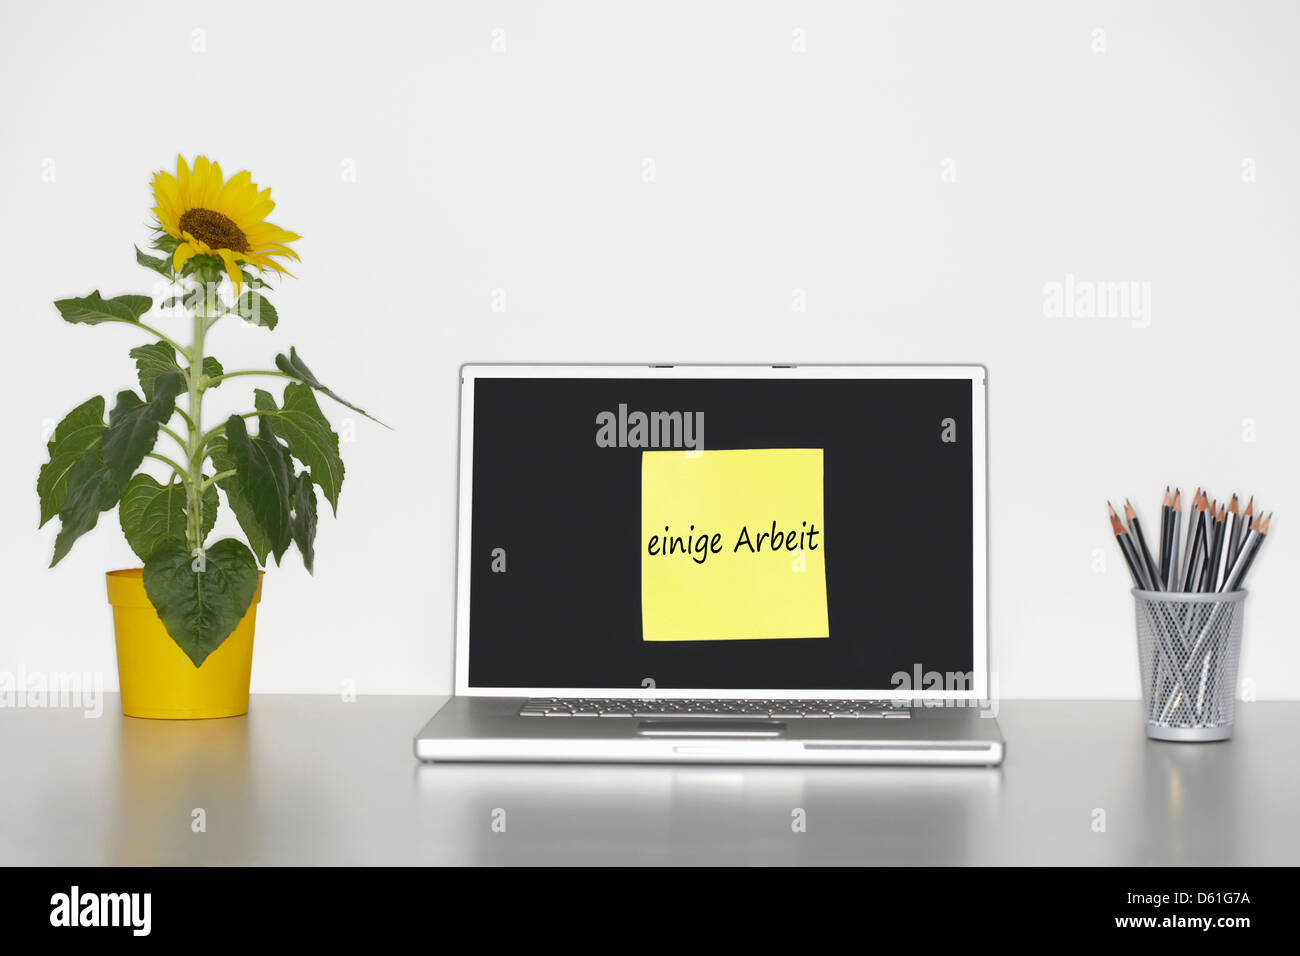 Sonnenblumen Pflanze Schreibtisch klebrig Briefpapier Laptop-Bildschirm mit "Once Rbeit" in Deutsch geschrieben Stockfoto